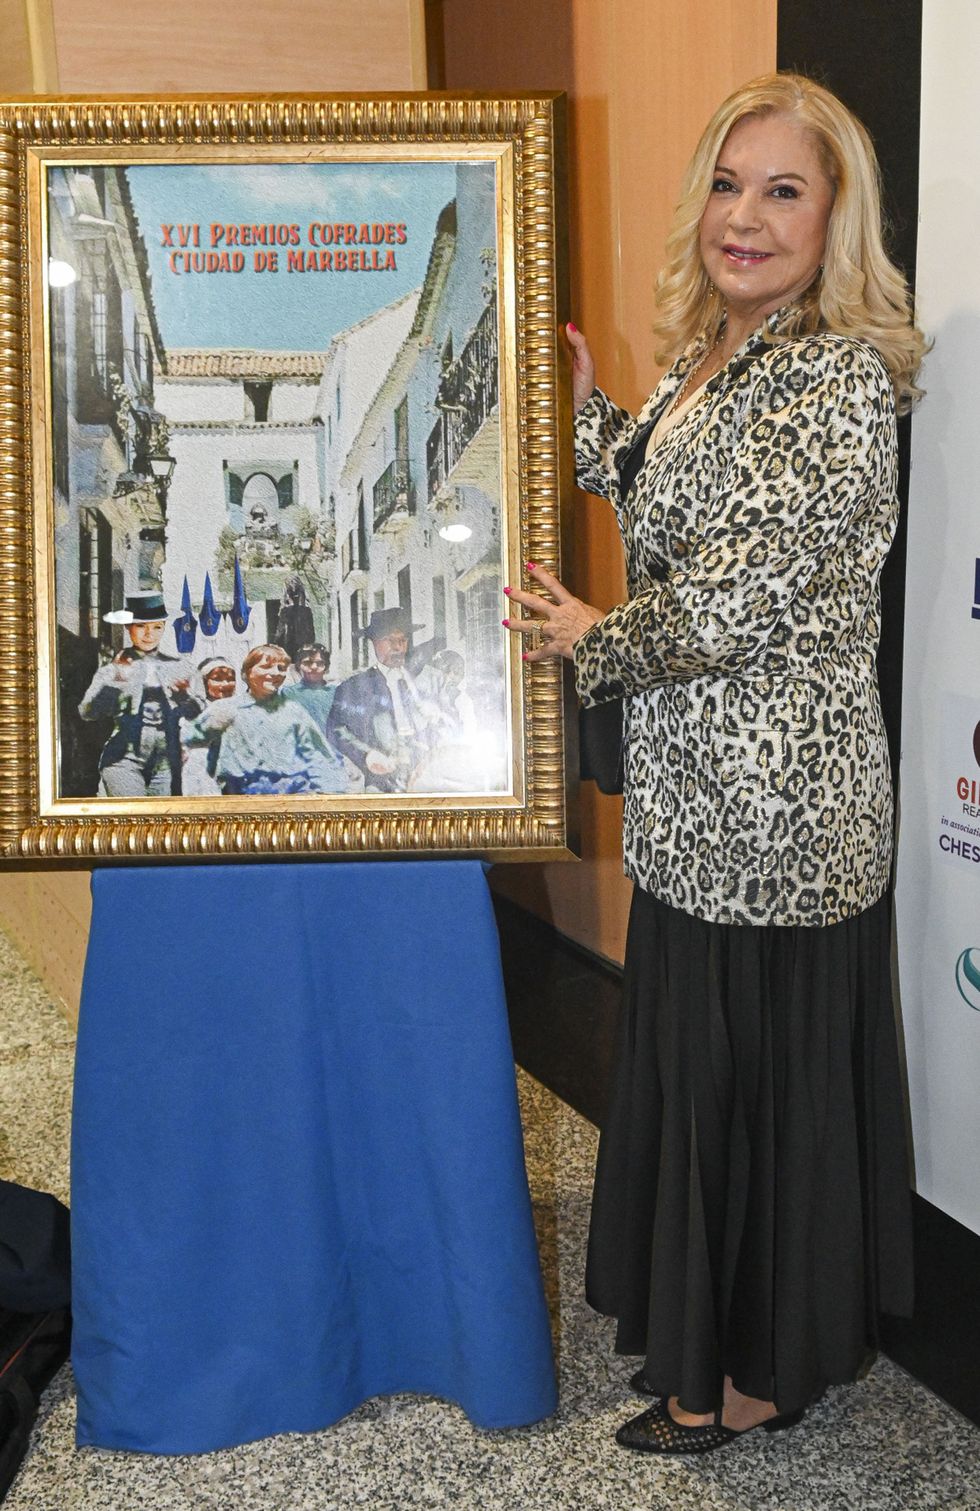 la actriz con americana print animal y falda negra posa con el cartel de los premios cofrades ciudad de marbella